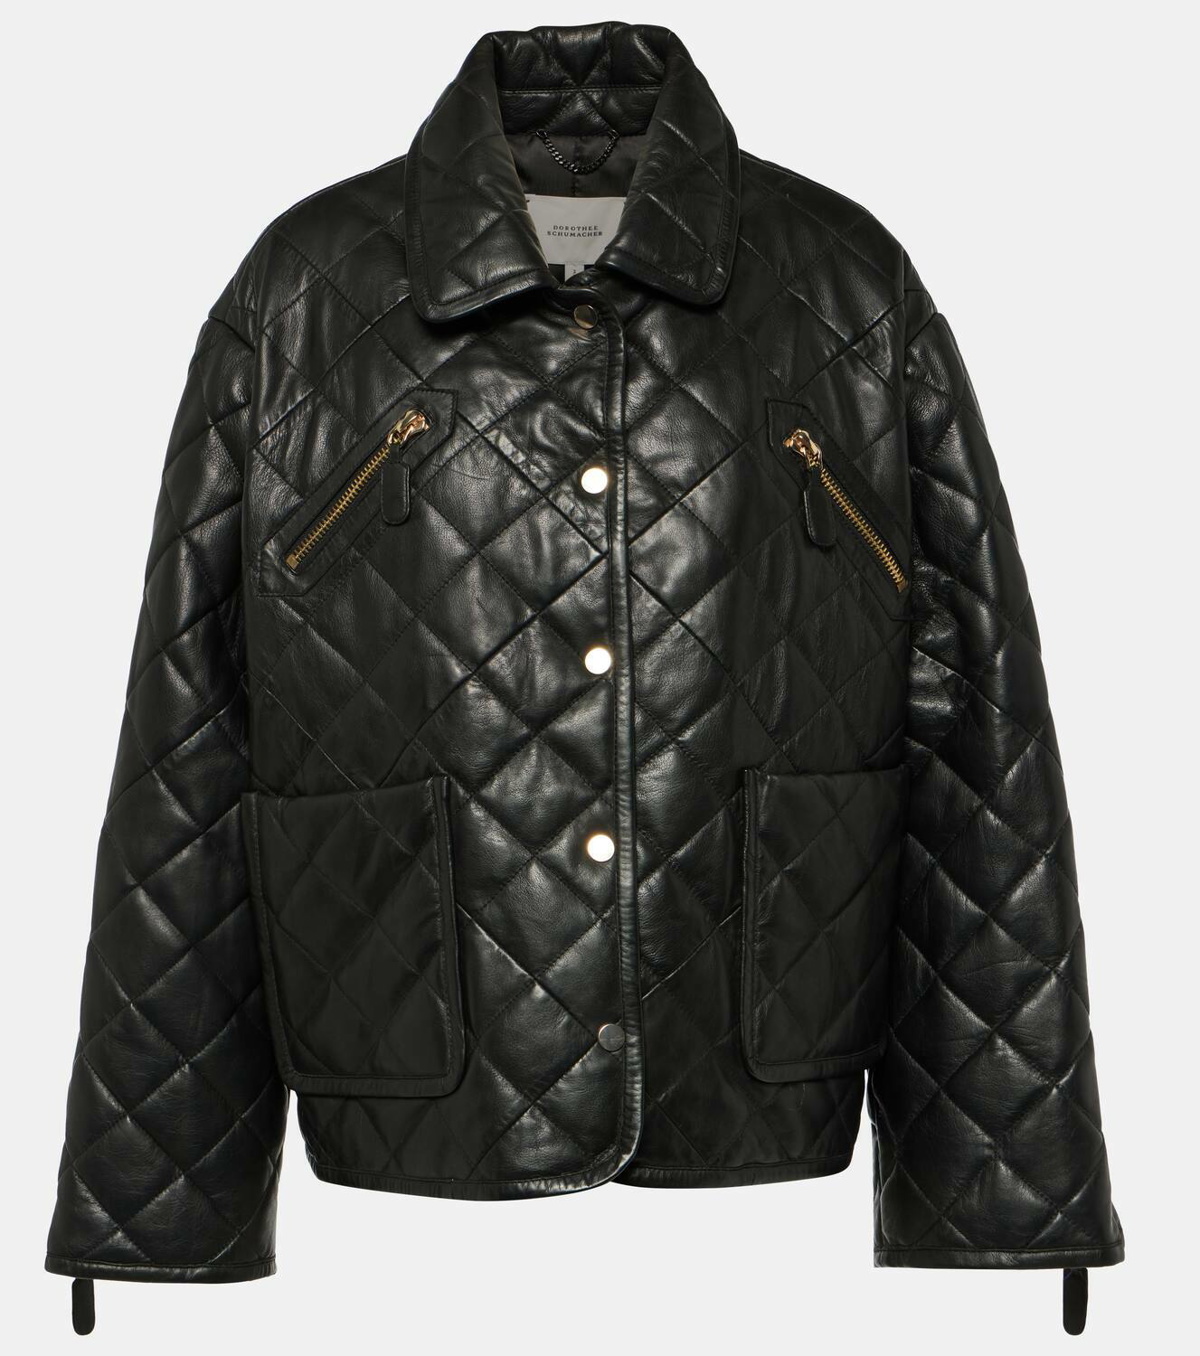 Dorothee Schumacher Sleek Statement leather jacket Dorothee Schumacher